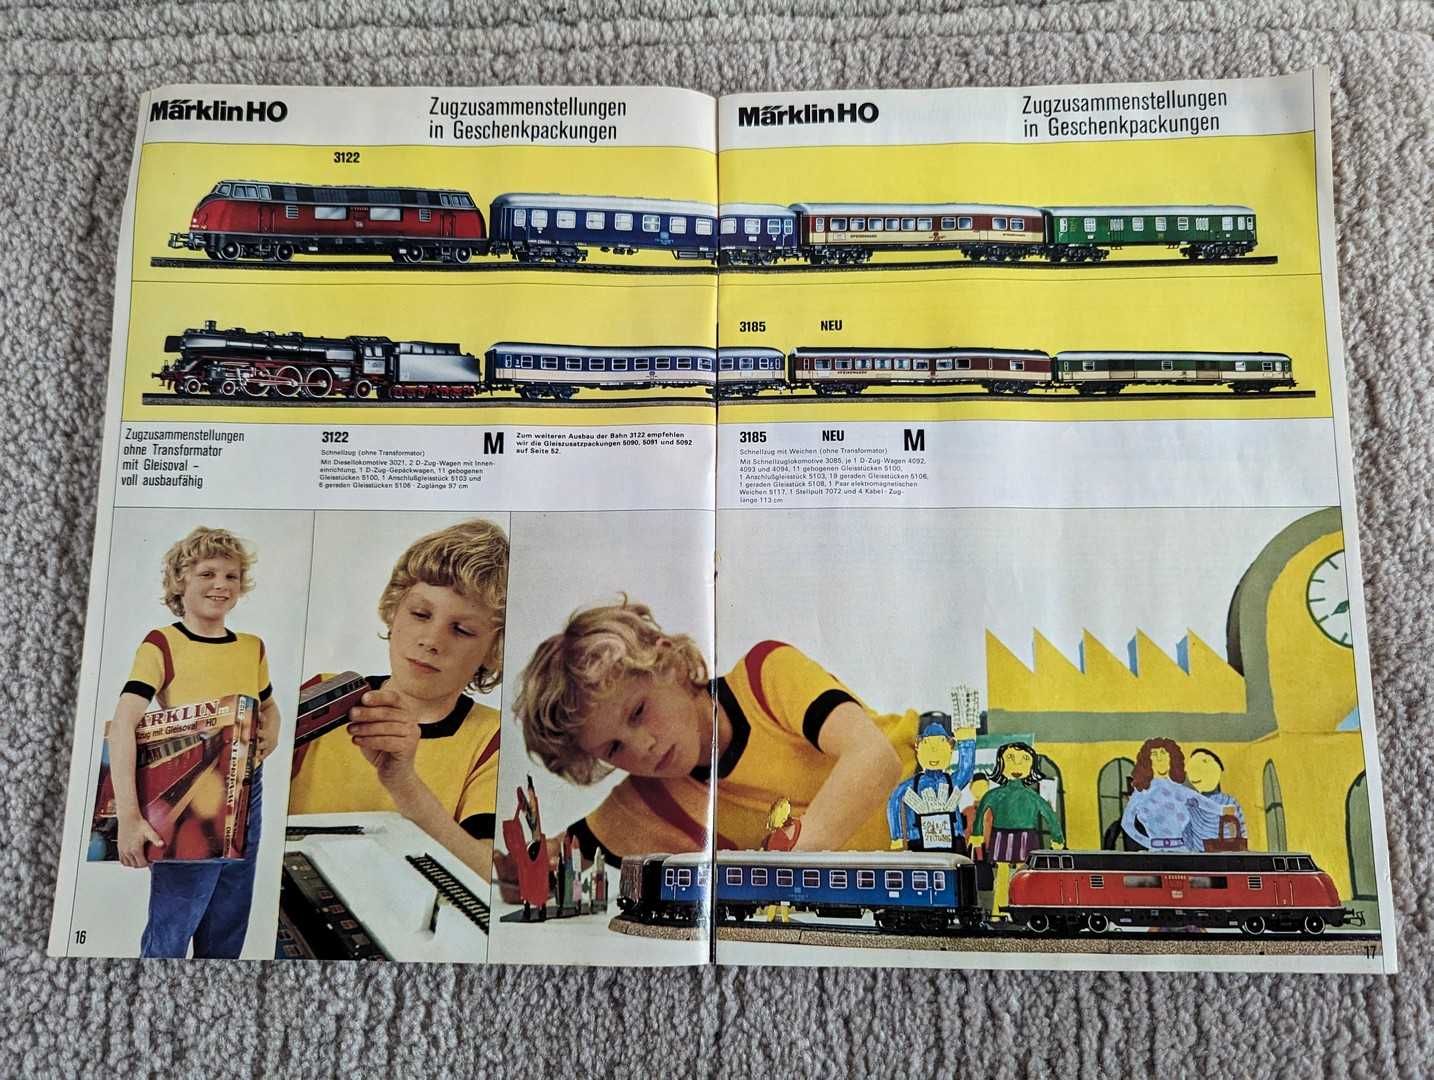 Revista vintage din 1973 Marklin, cu trenulețe